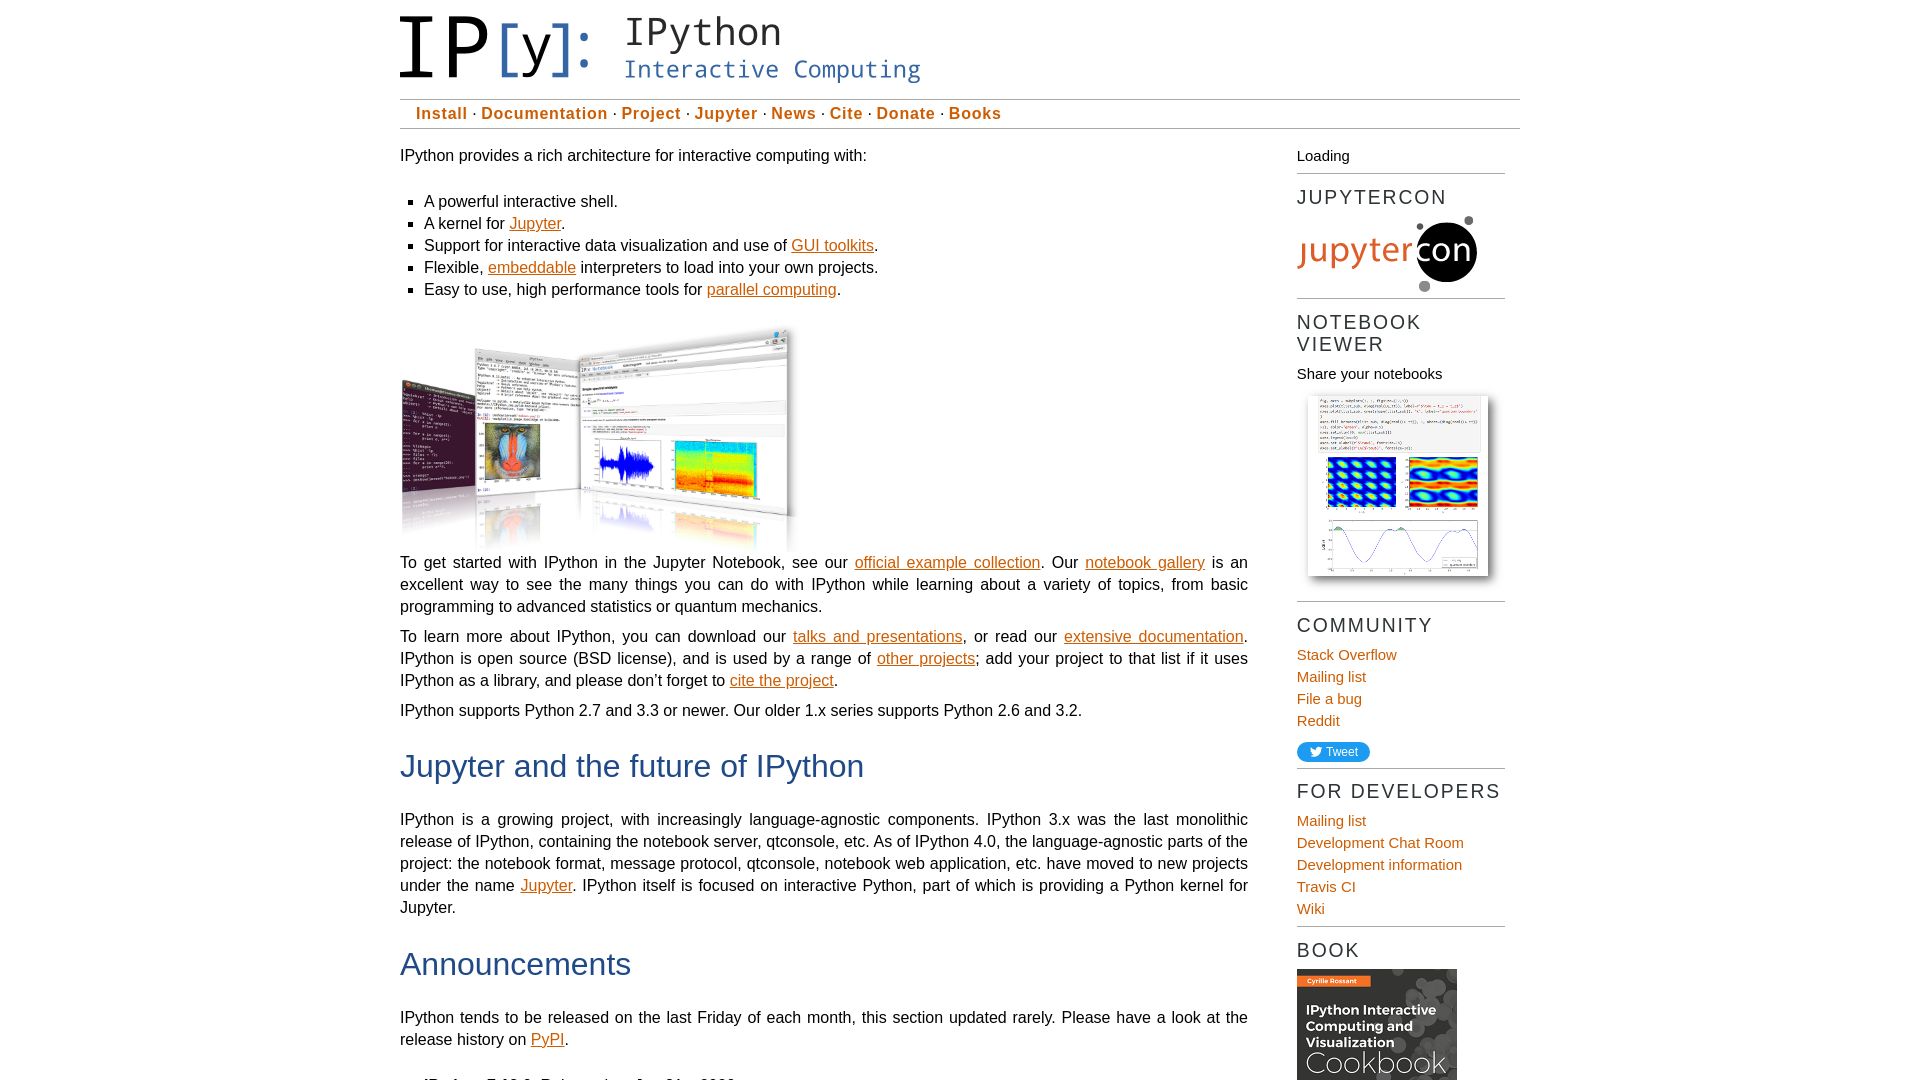 Website status ipython.org is   ONLINE